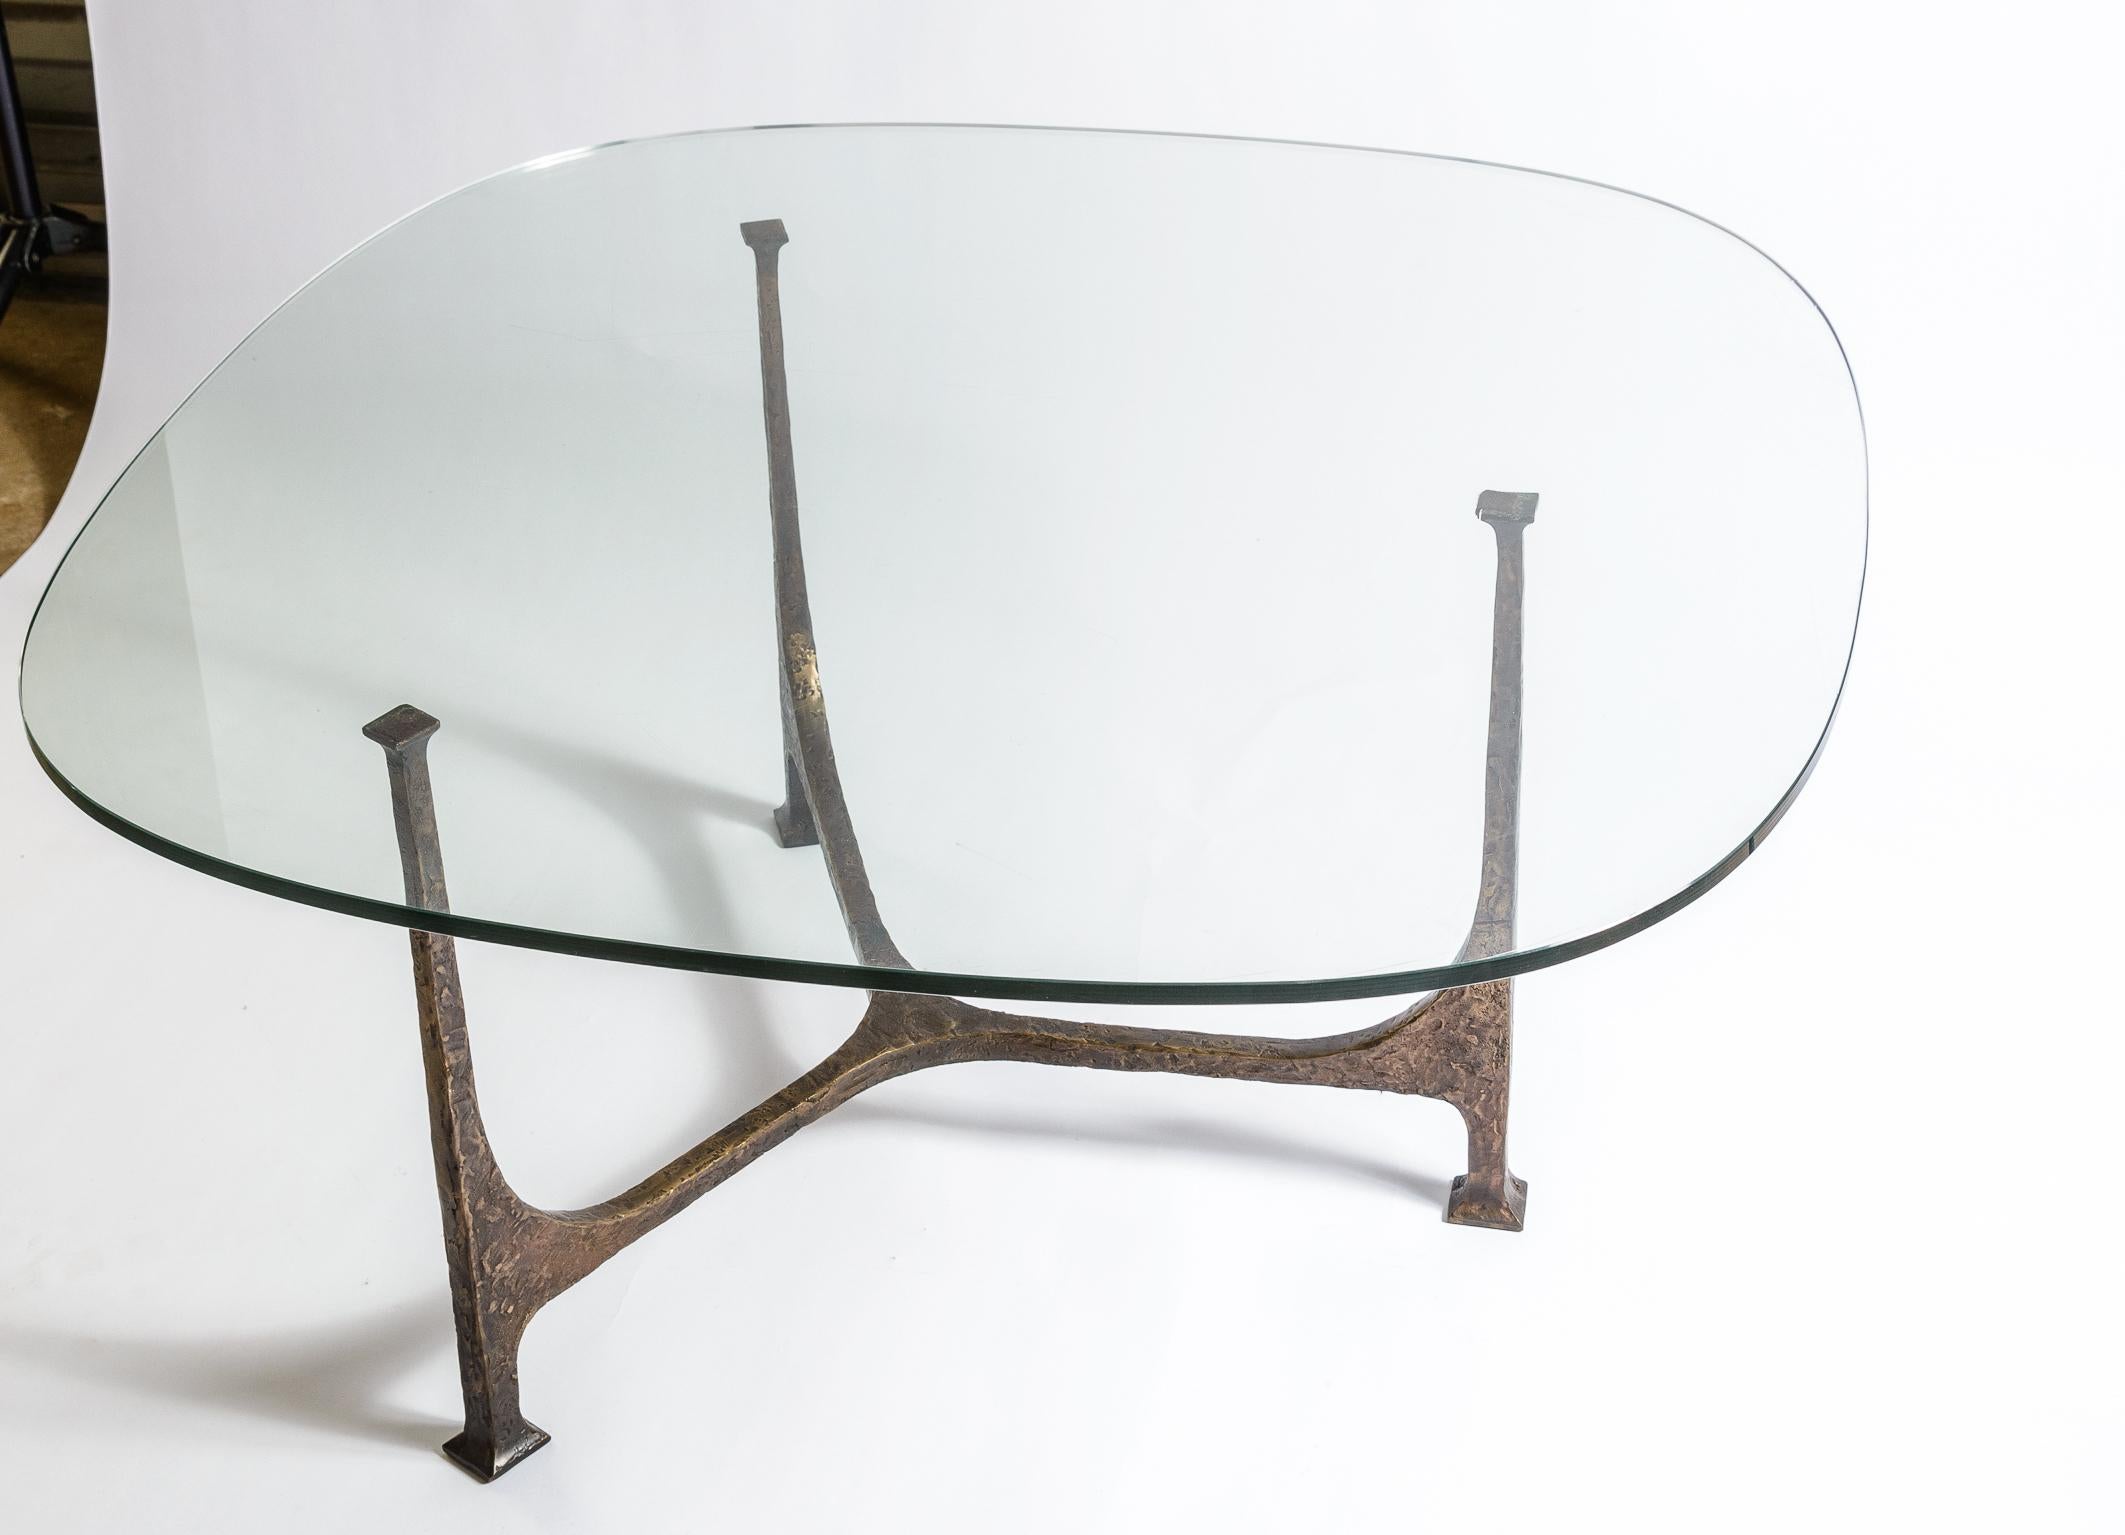 Bronze Wachsausschmelzverfahren Tisch mit drei Beinen
Schöne Original-Patina
Wahrscheinlich französischer Herkunft